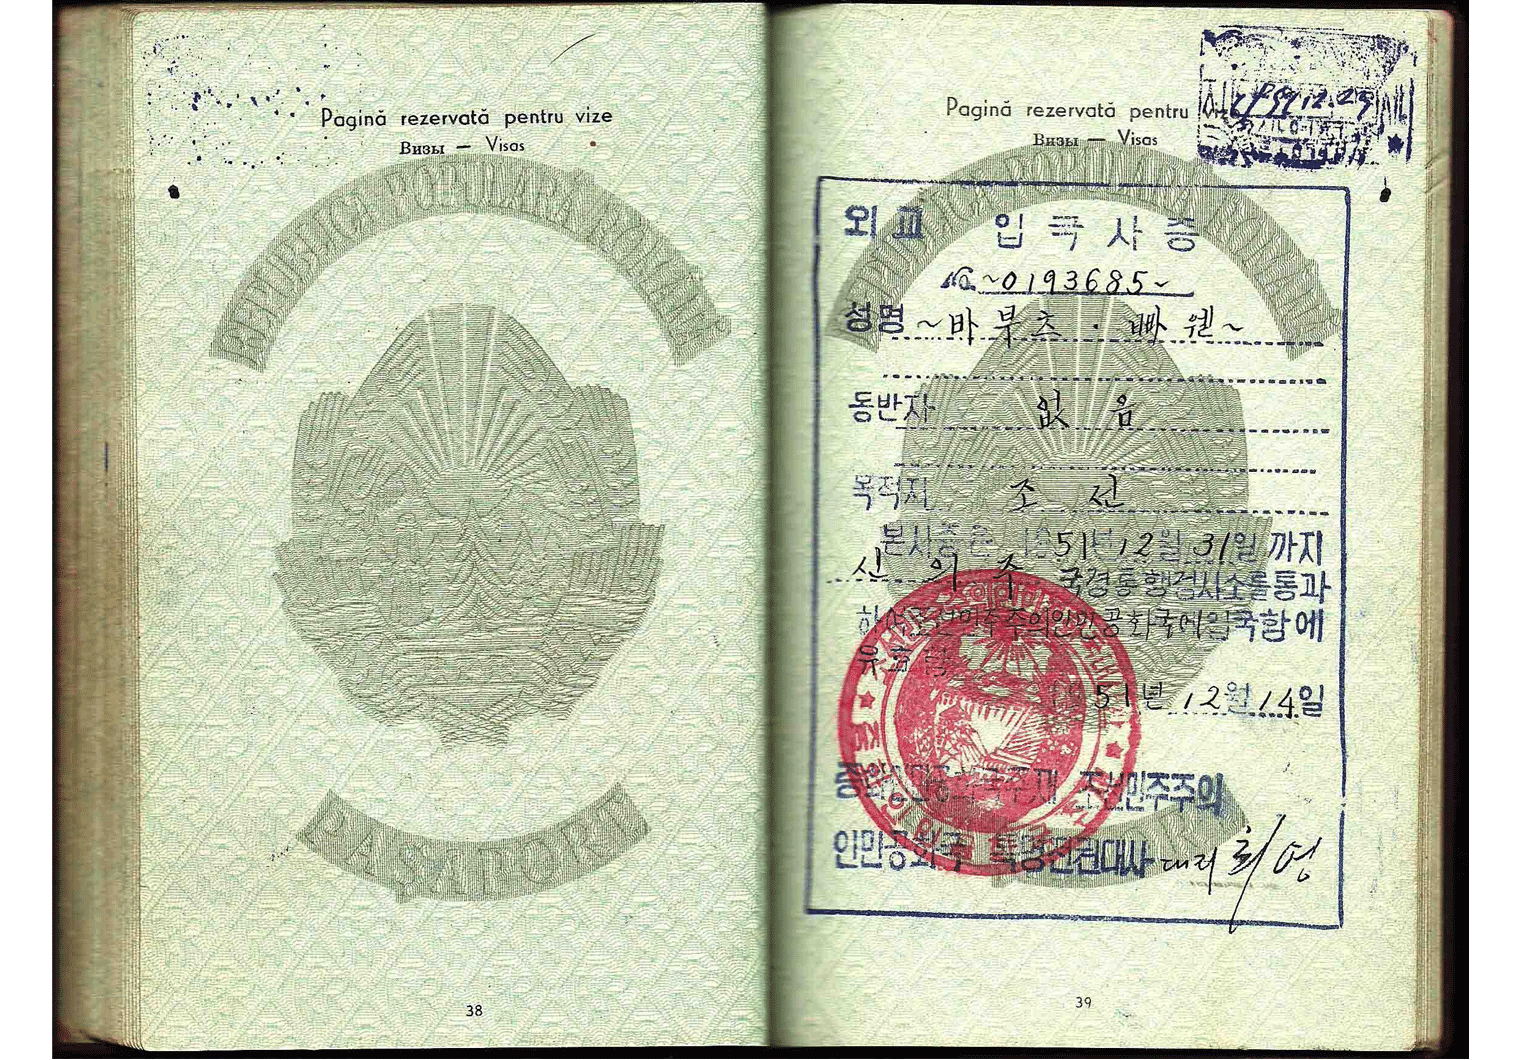 1951 North Korean diplomatic visa from Pyongyang